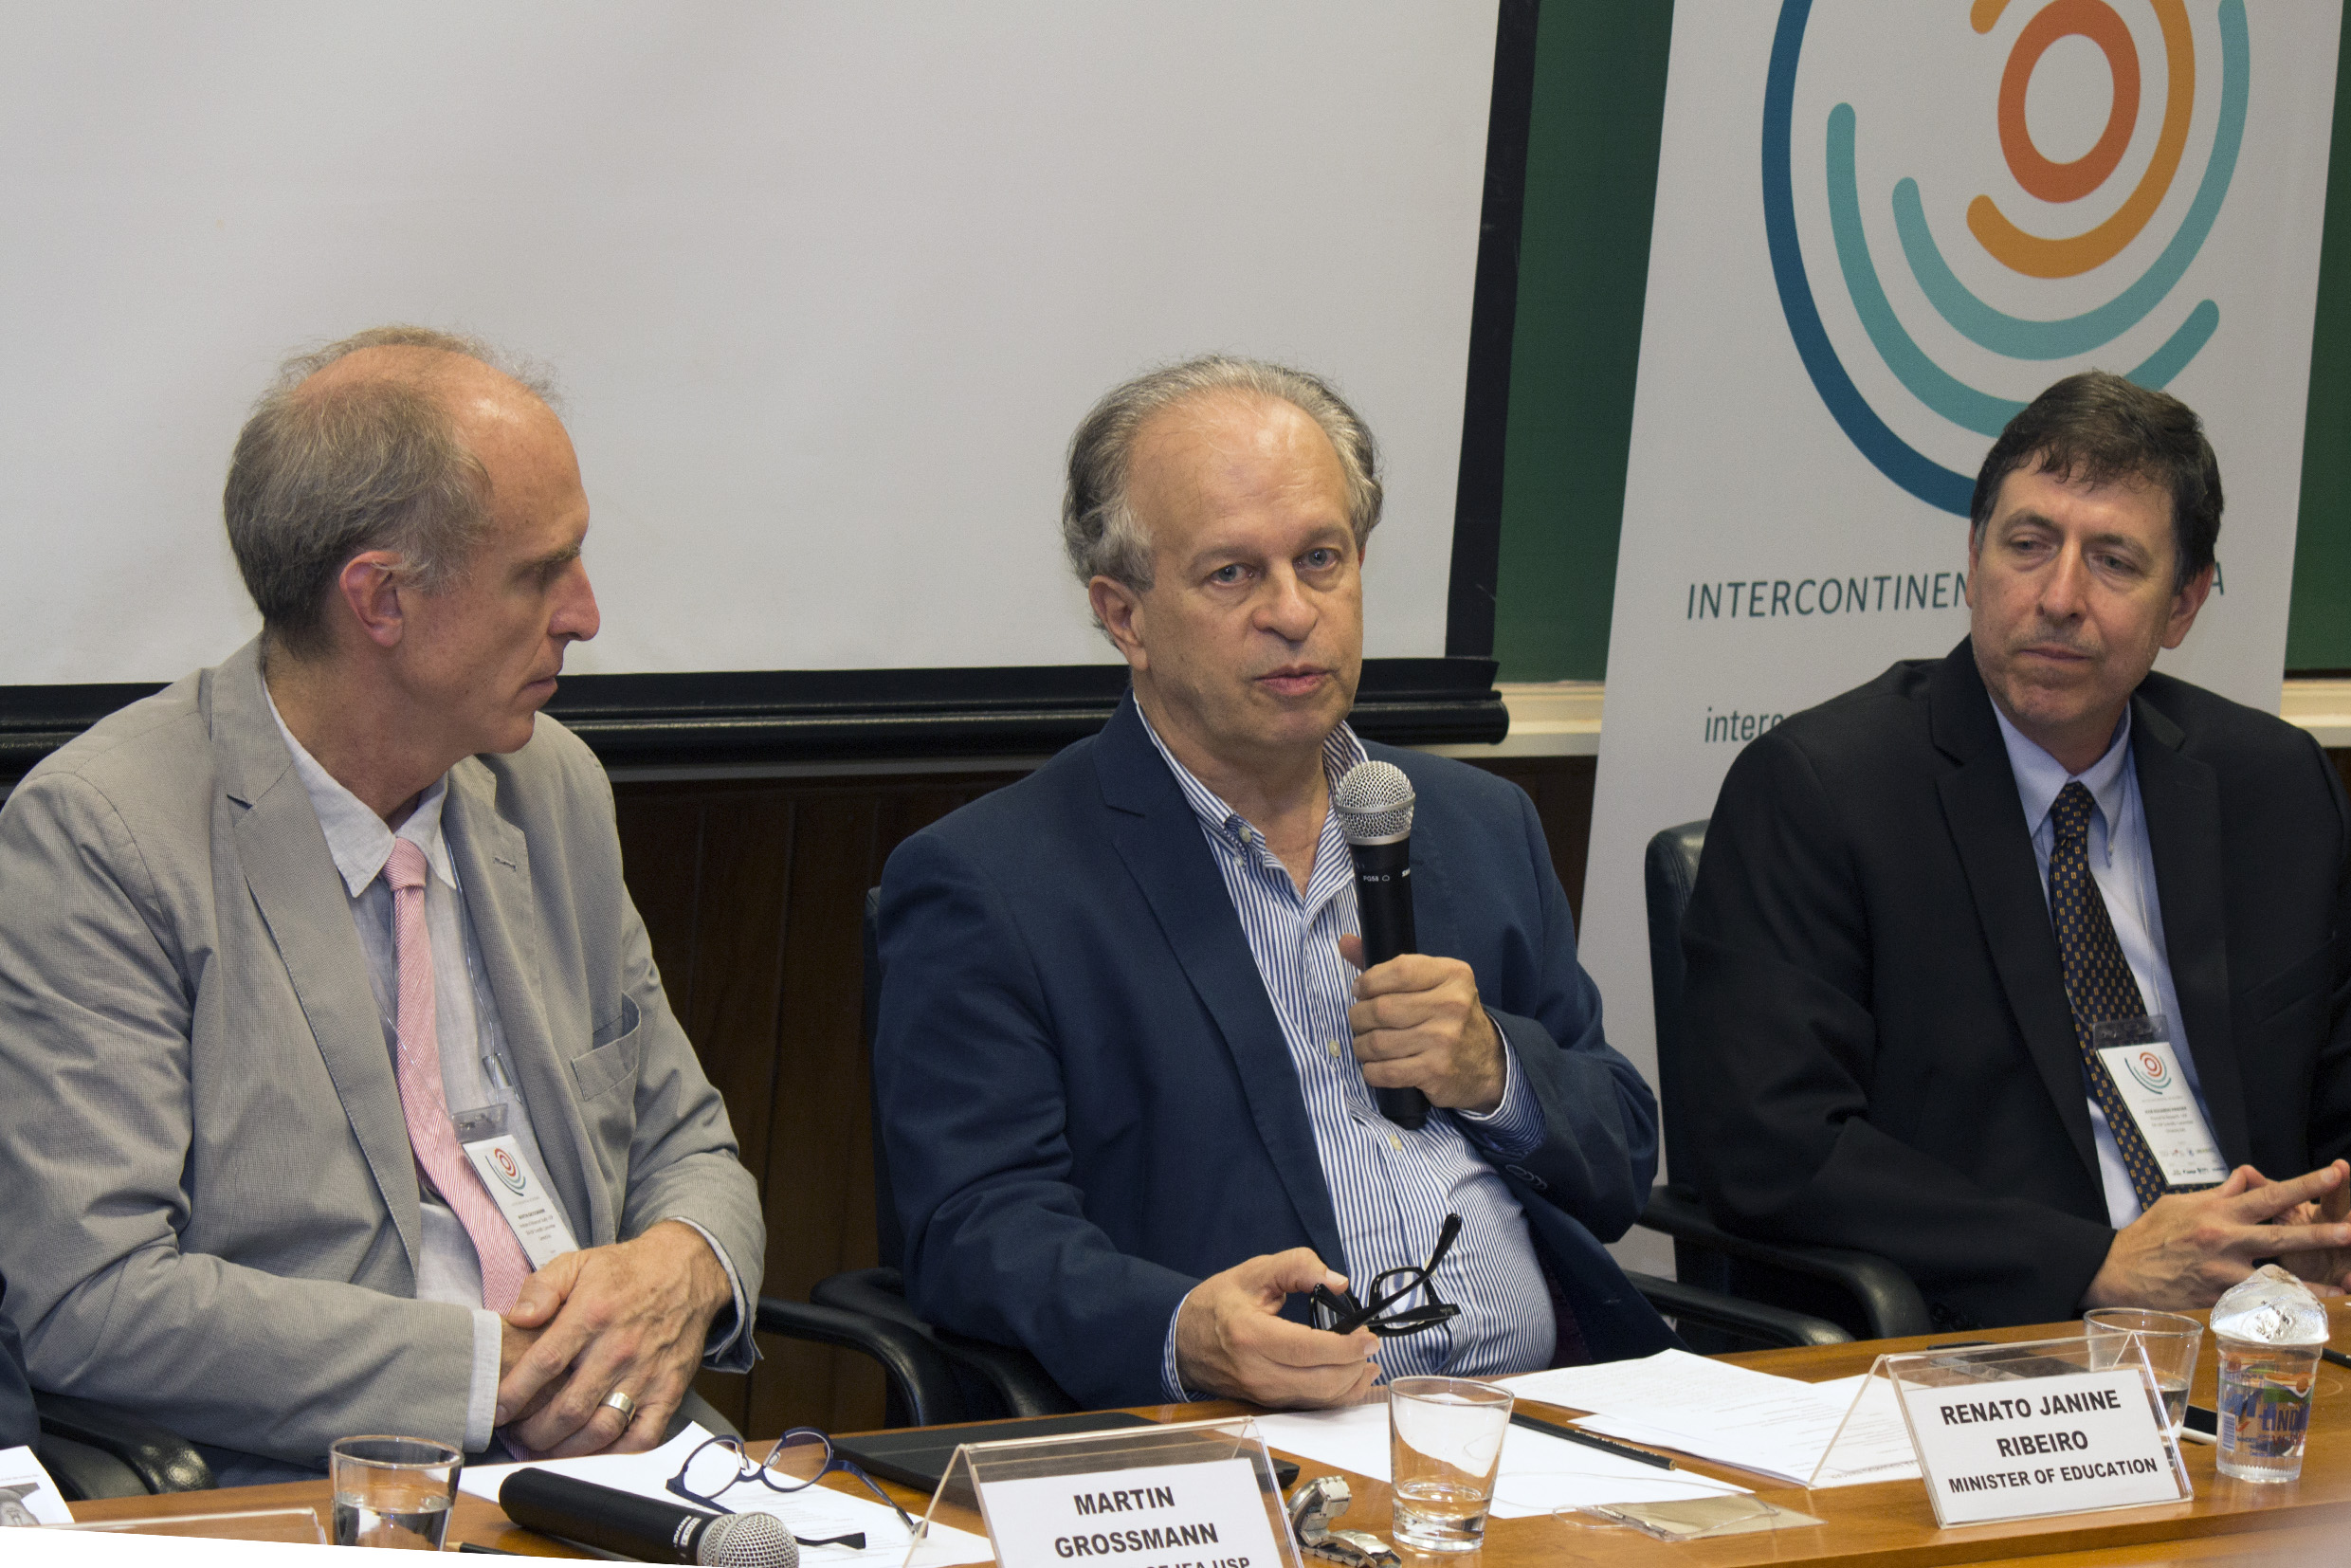 Martin Grossmann, Minister Renato Janine Ribeiro and José Eduardo Krieger